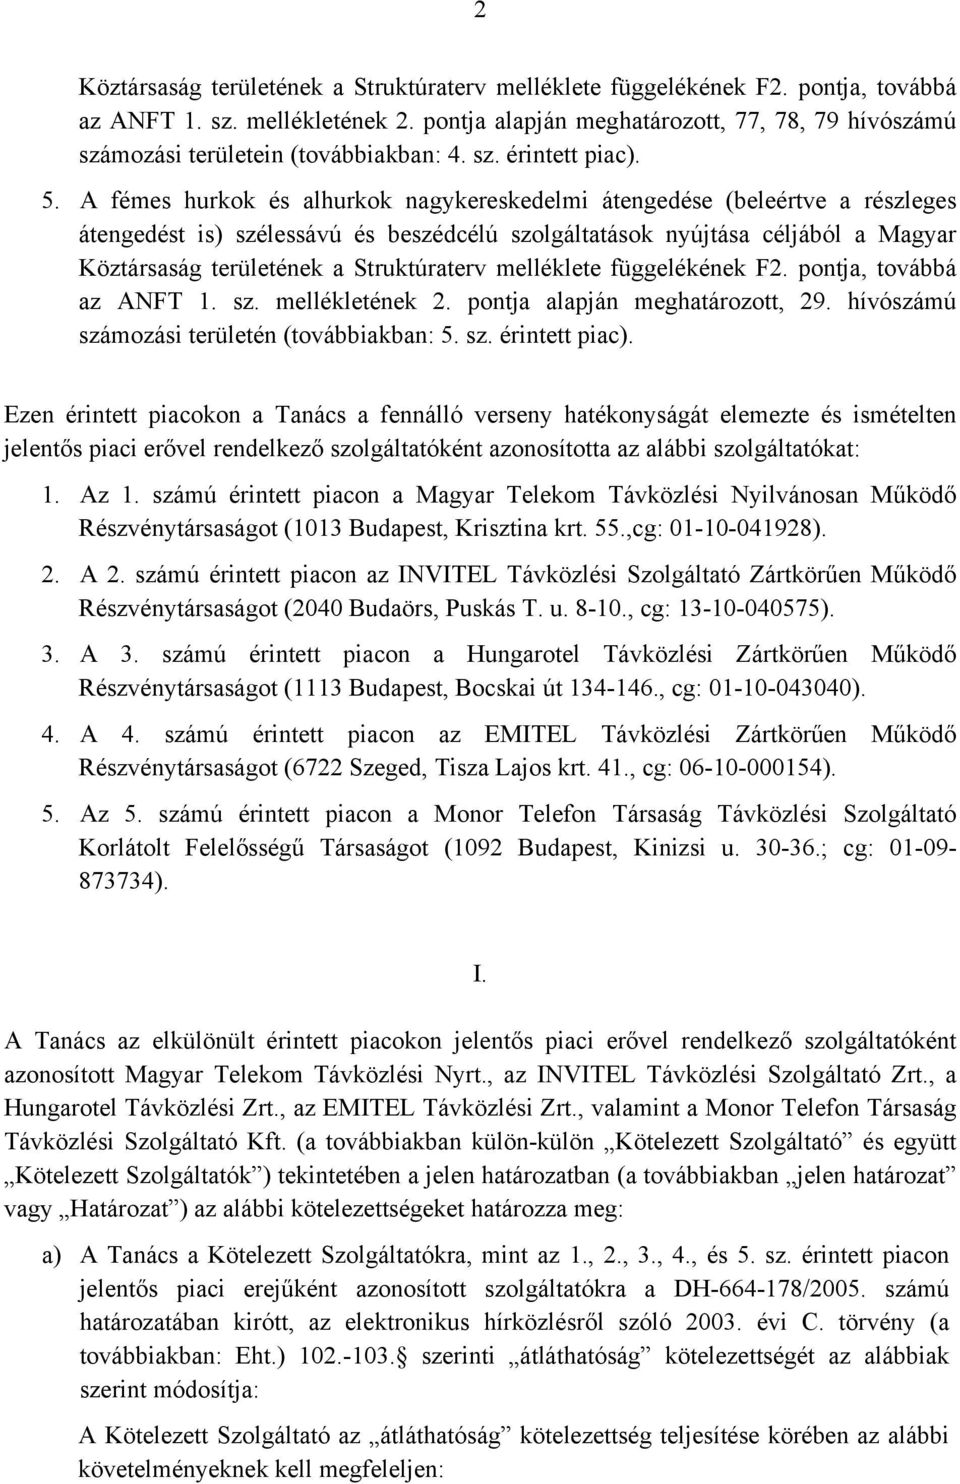 A fémes hurkok és alhurkok nagykereskedelmi átengedése (beleértve a részleges átengedést is) szélessávú és beszédcélú szolgáltatások nyújtása céljából a Magyar Köztársaság területének a Struktúraterv